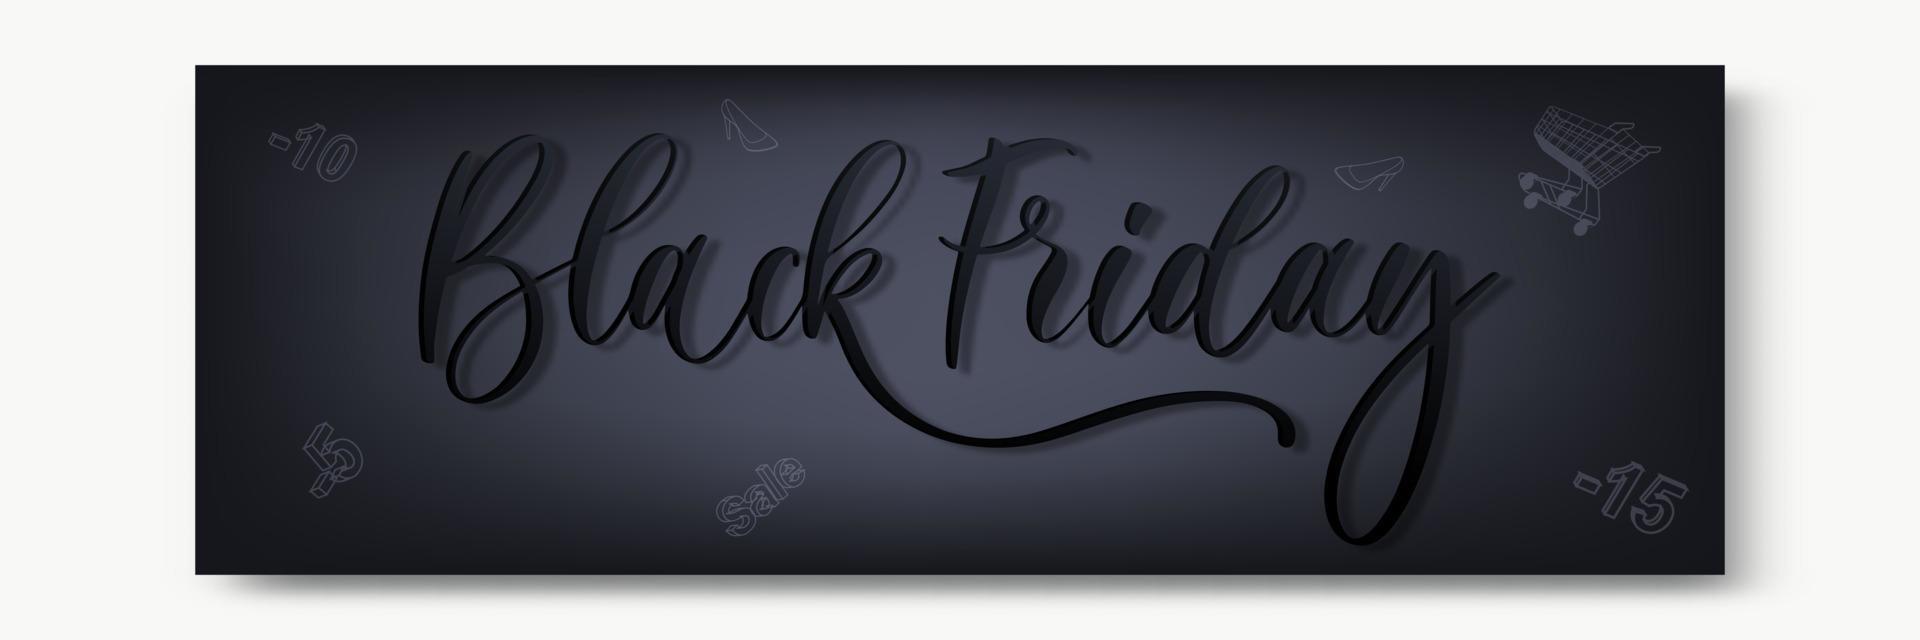 svart fredag eleganta premie baner eller rubrik. modern nedsatt typografi begrepp. svart på svart med abstrakt dekorativ element, realistisk skugga och gyllene glitter. vektor